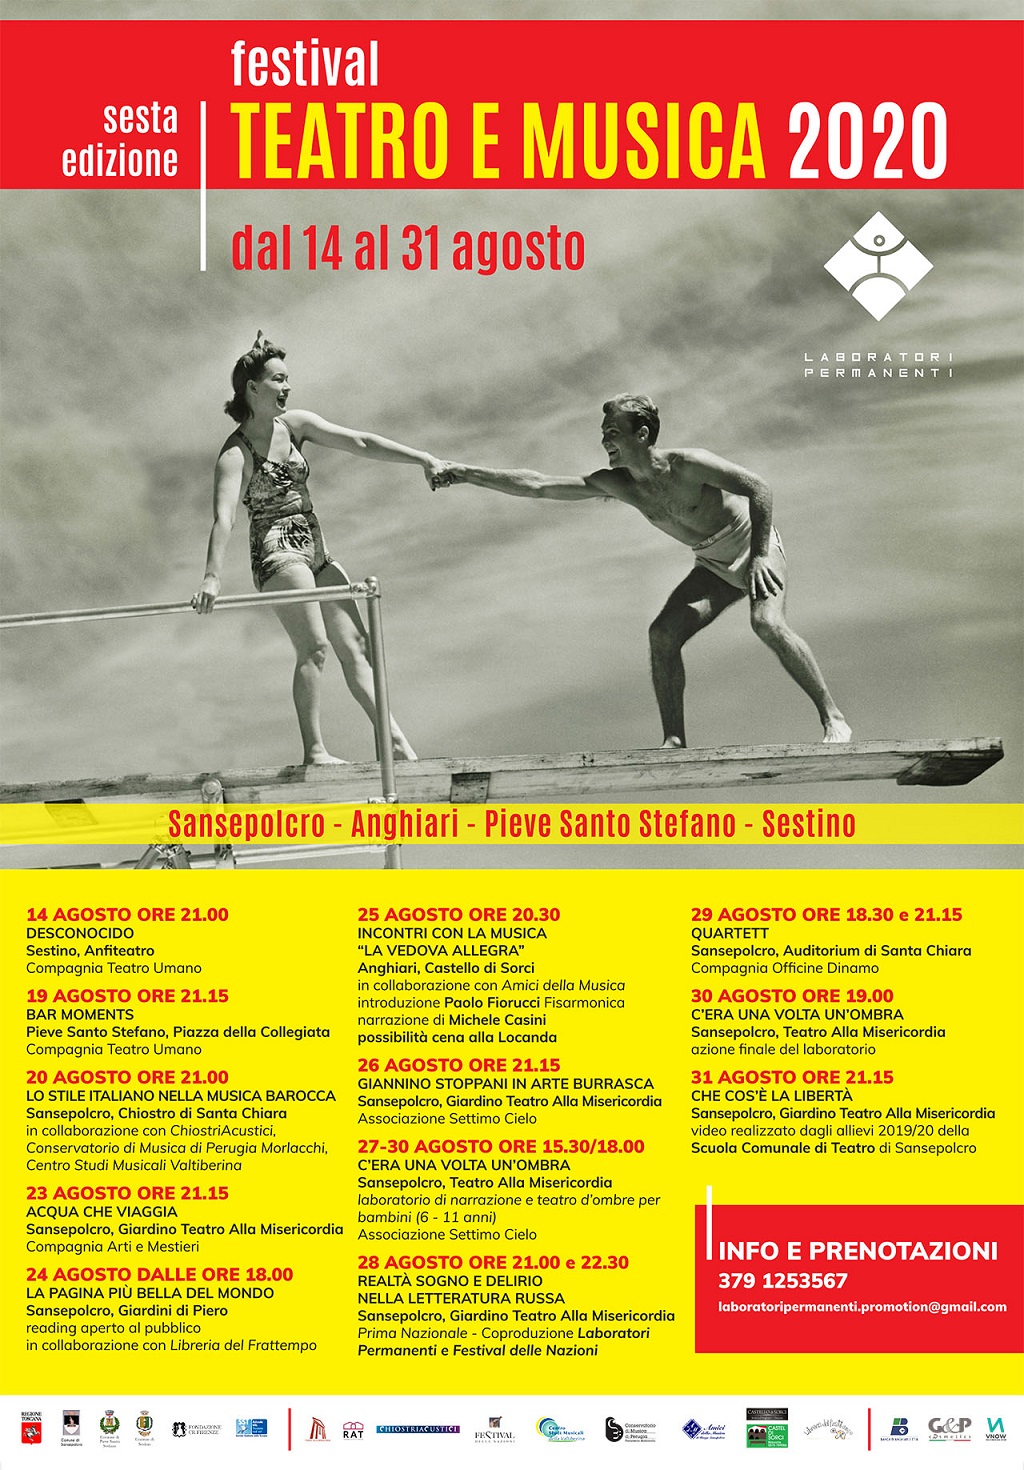 Festival Teatro e Musica 2020: sesta edizione dal 14 al 31 agosto a Sansepolcro e in Valtiberina Toscana